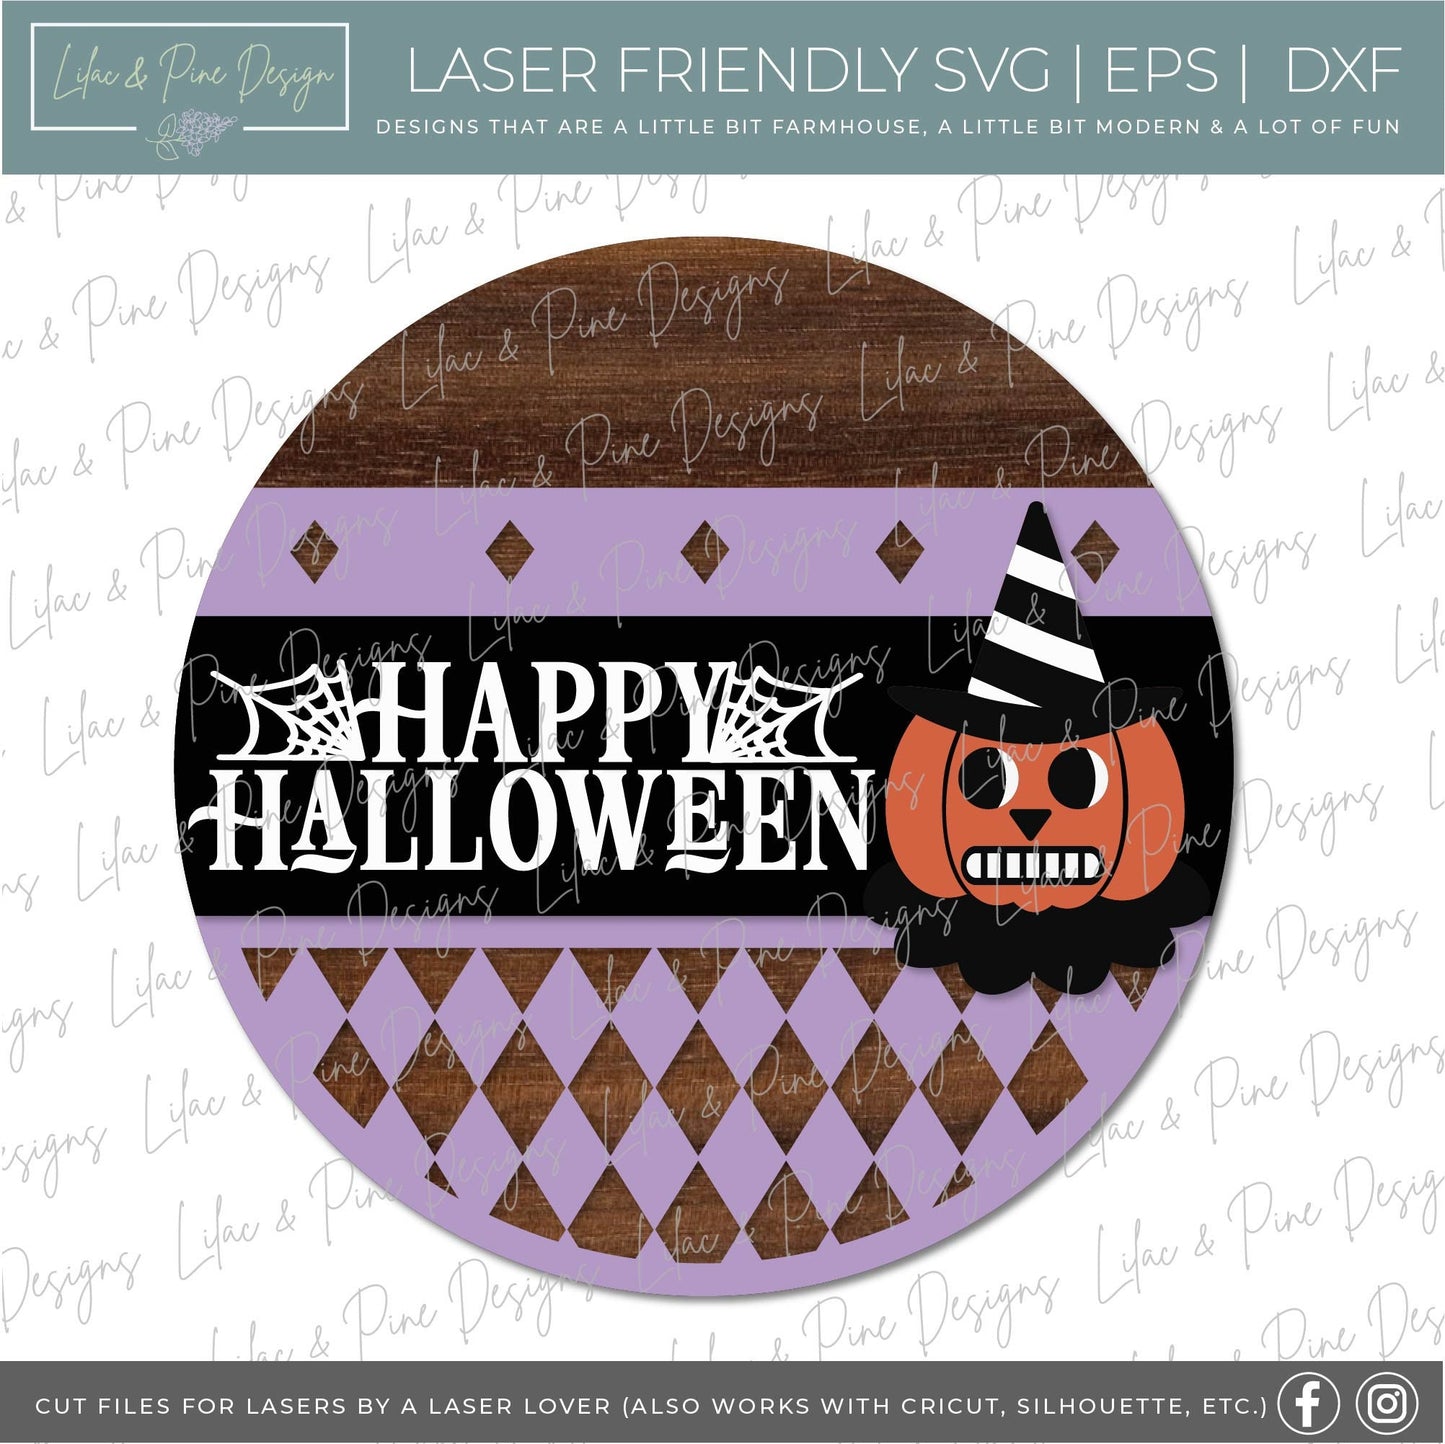 Vintage Halloween door hanger SVG, Vintage Jack o lantern SVG, Happy Halloween svg,  Halloween Welcome sign, laser cut file, Glowforge SVG